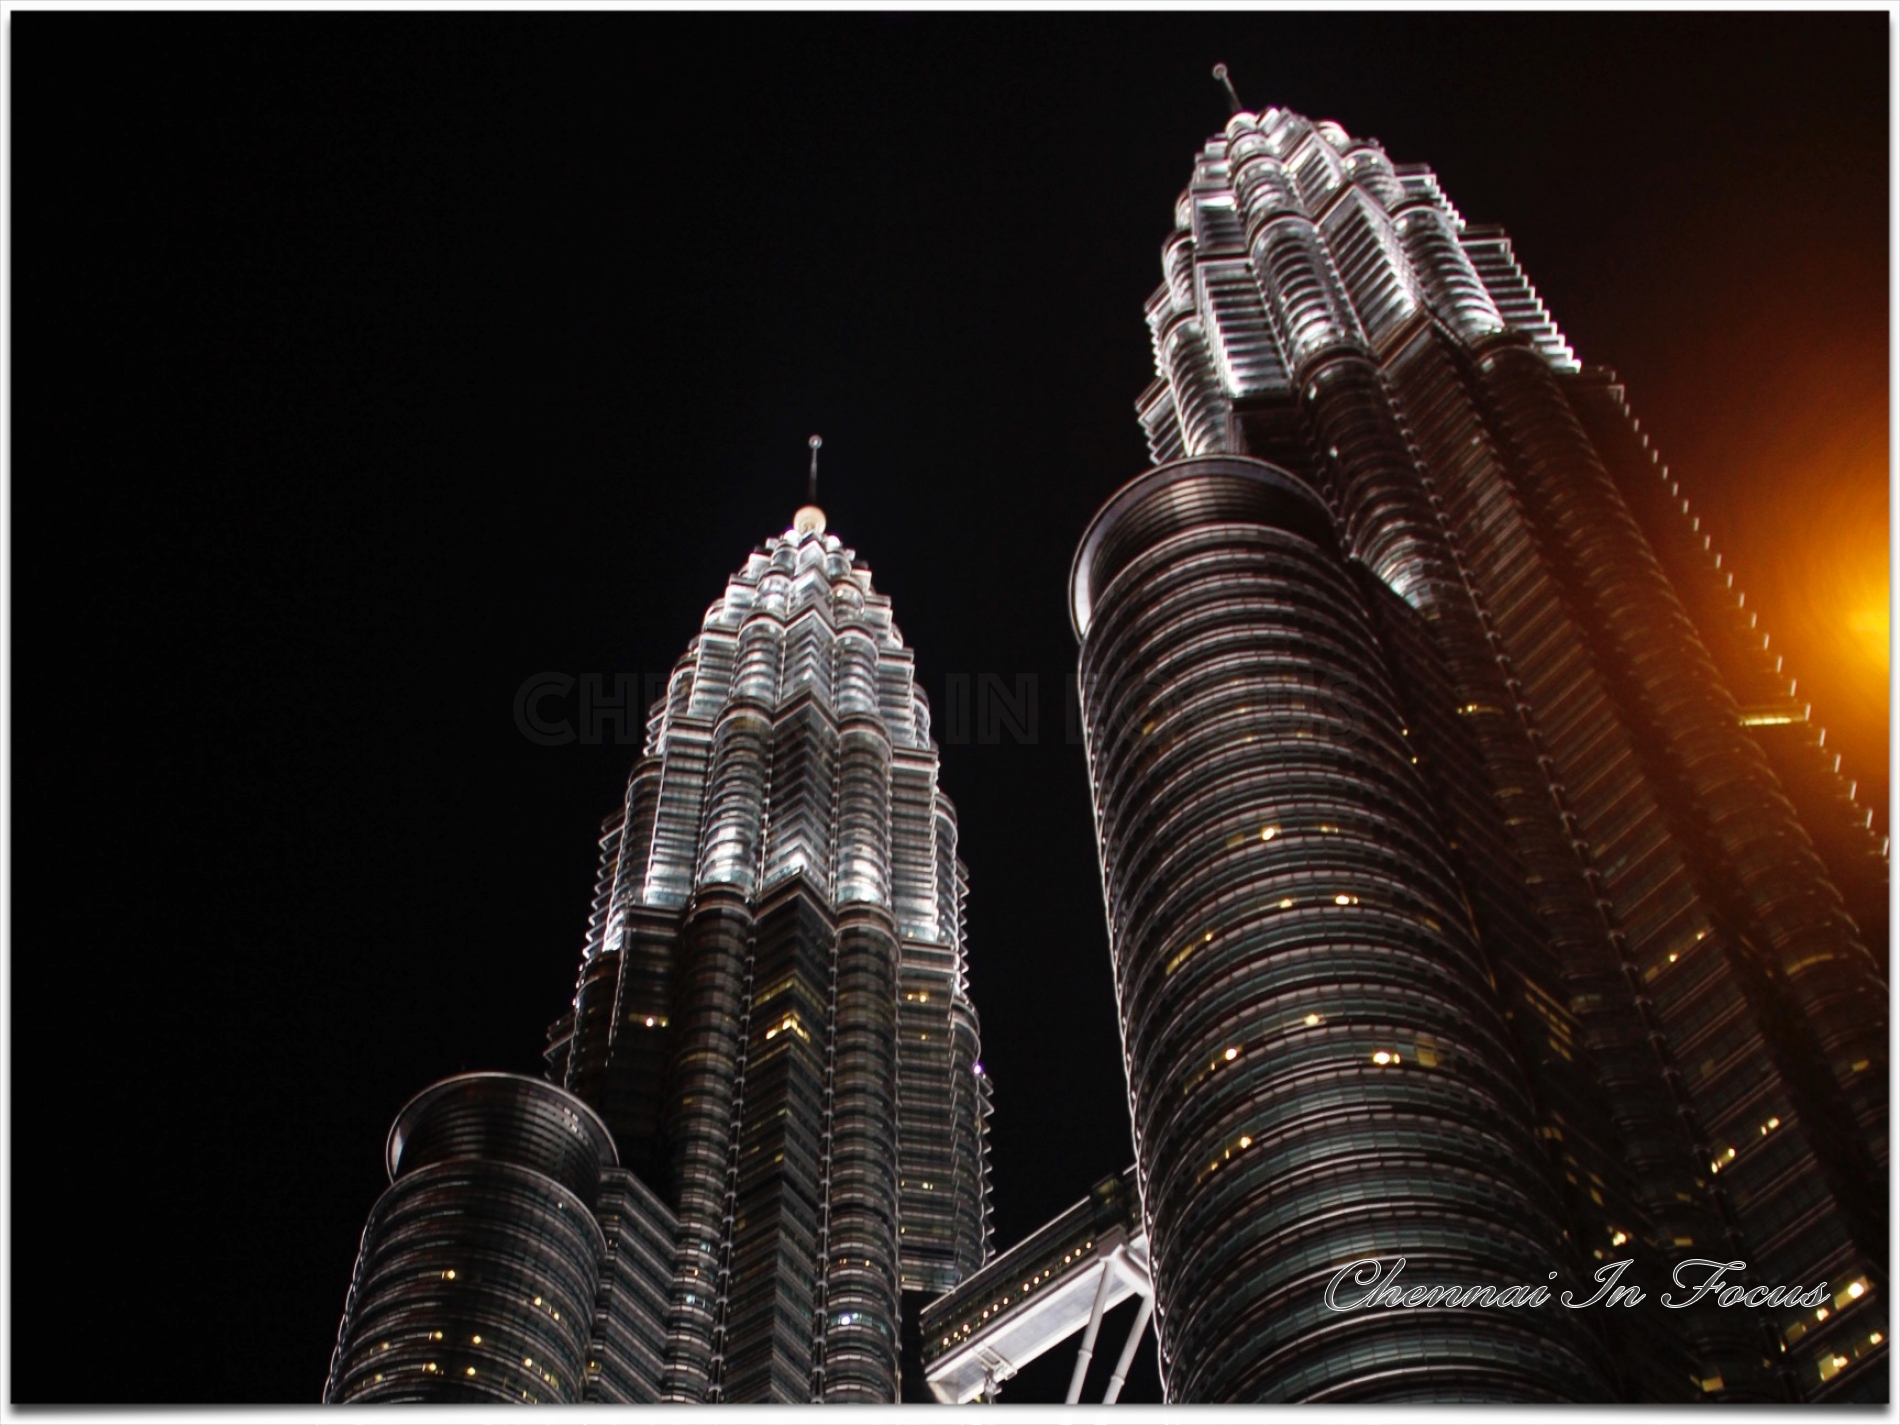 Petronas Twin Towers |  Kuala Lumpur, Malaysia